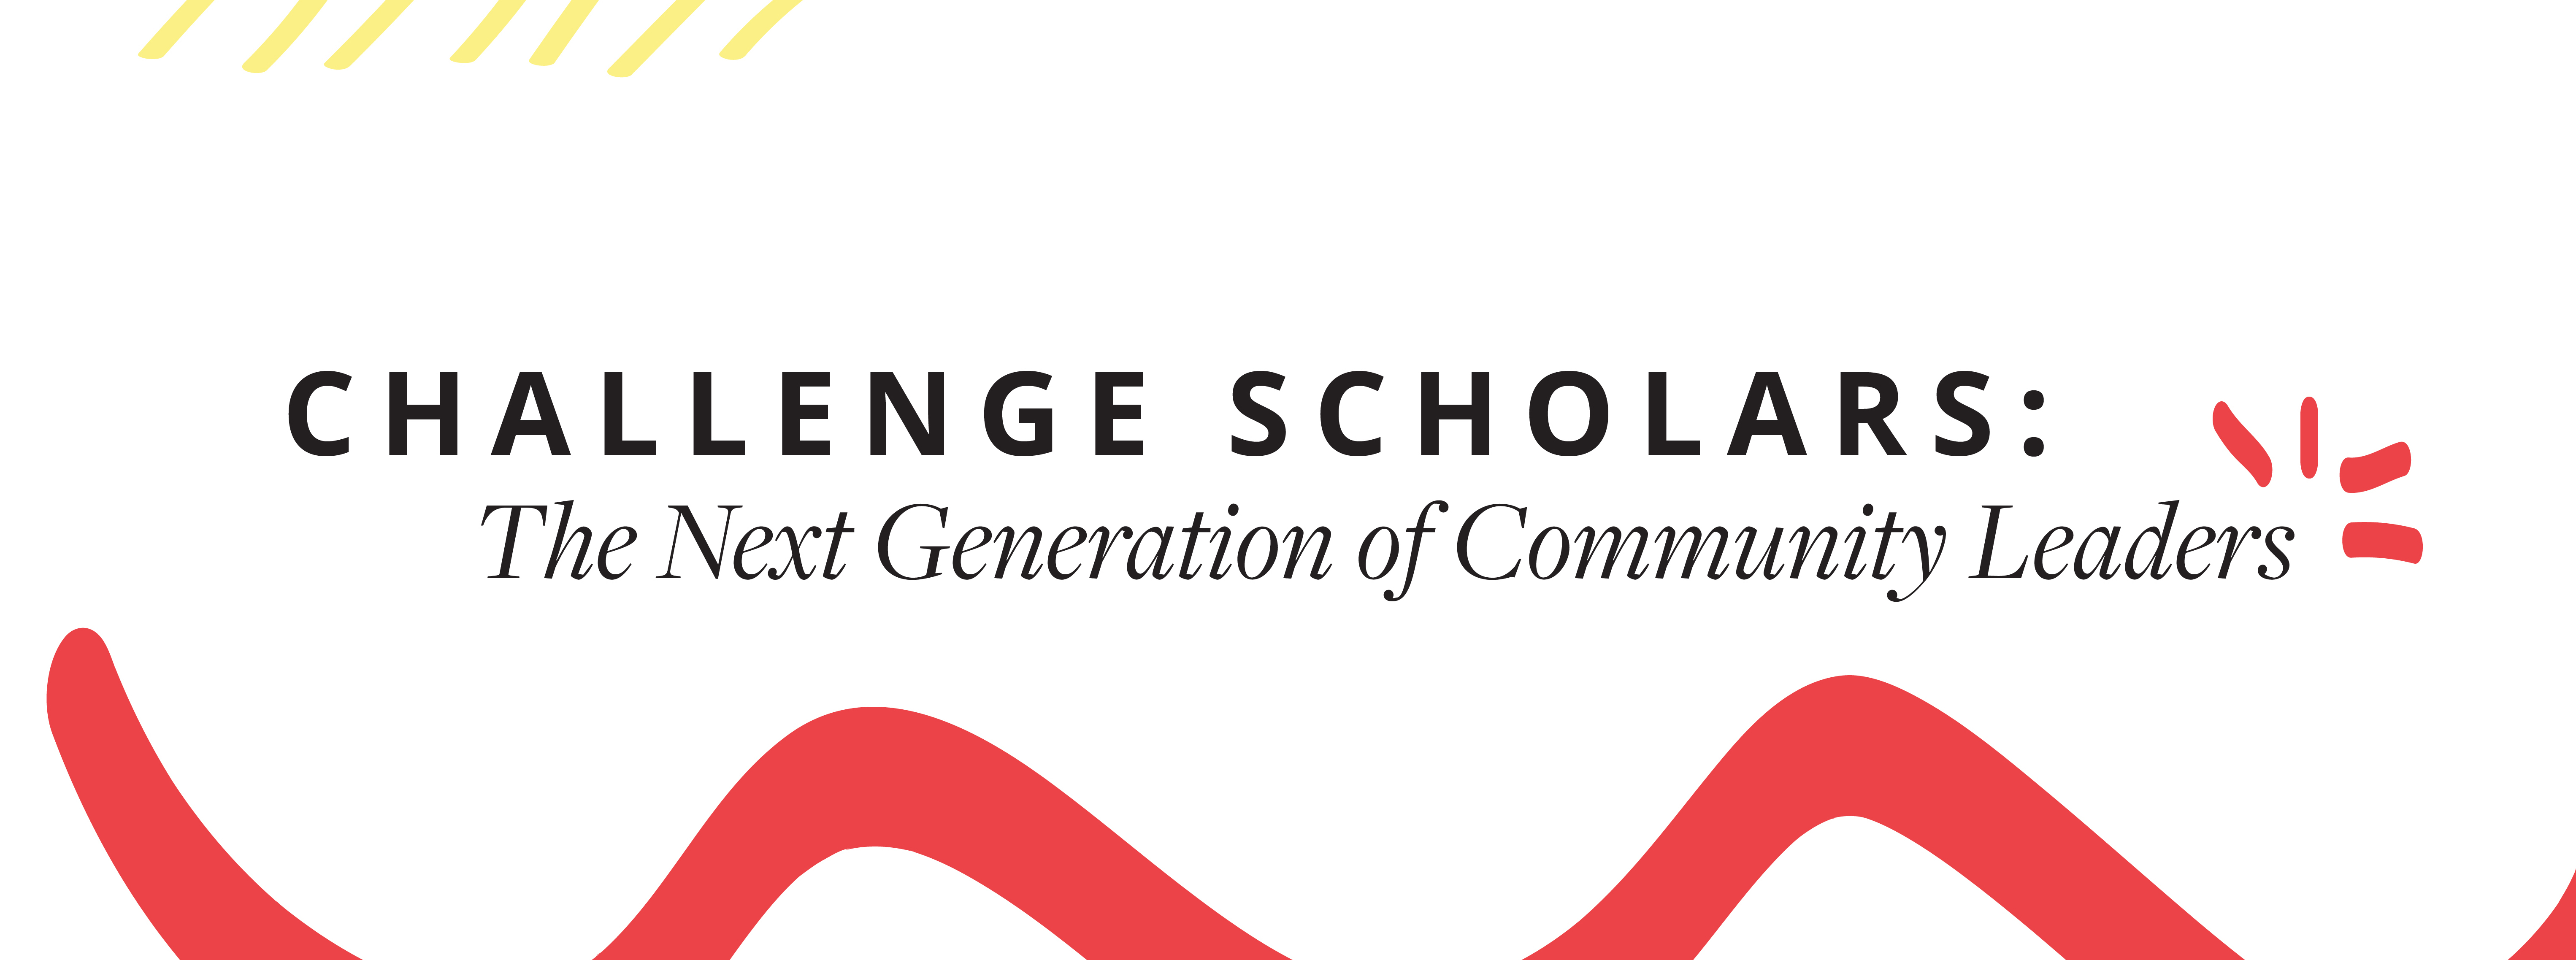 Challenge-Scholars.jpg#asset:4081